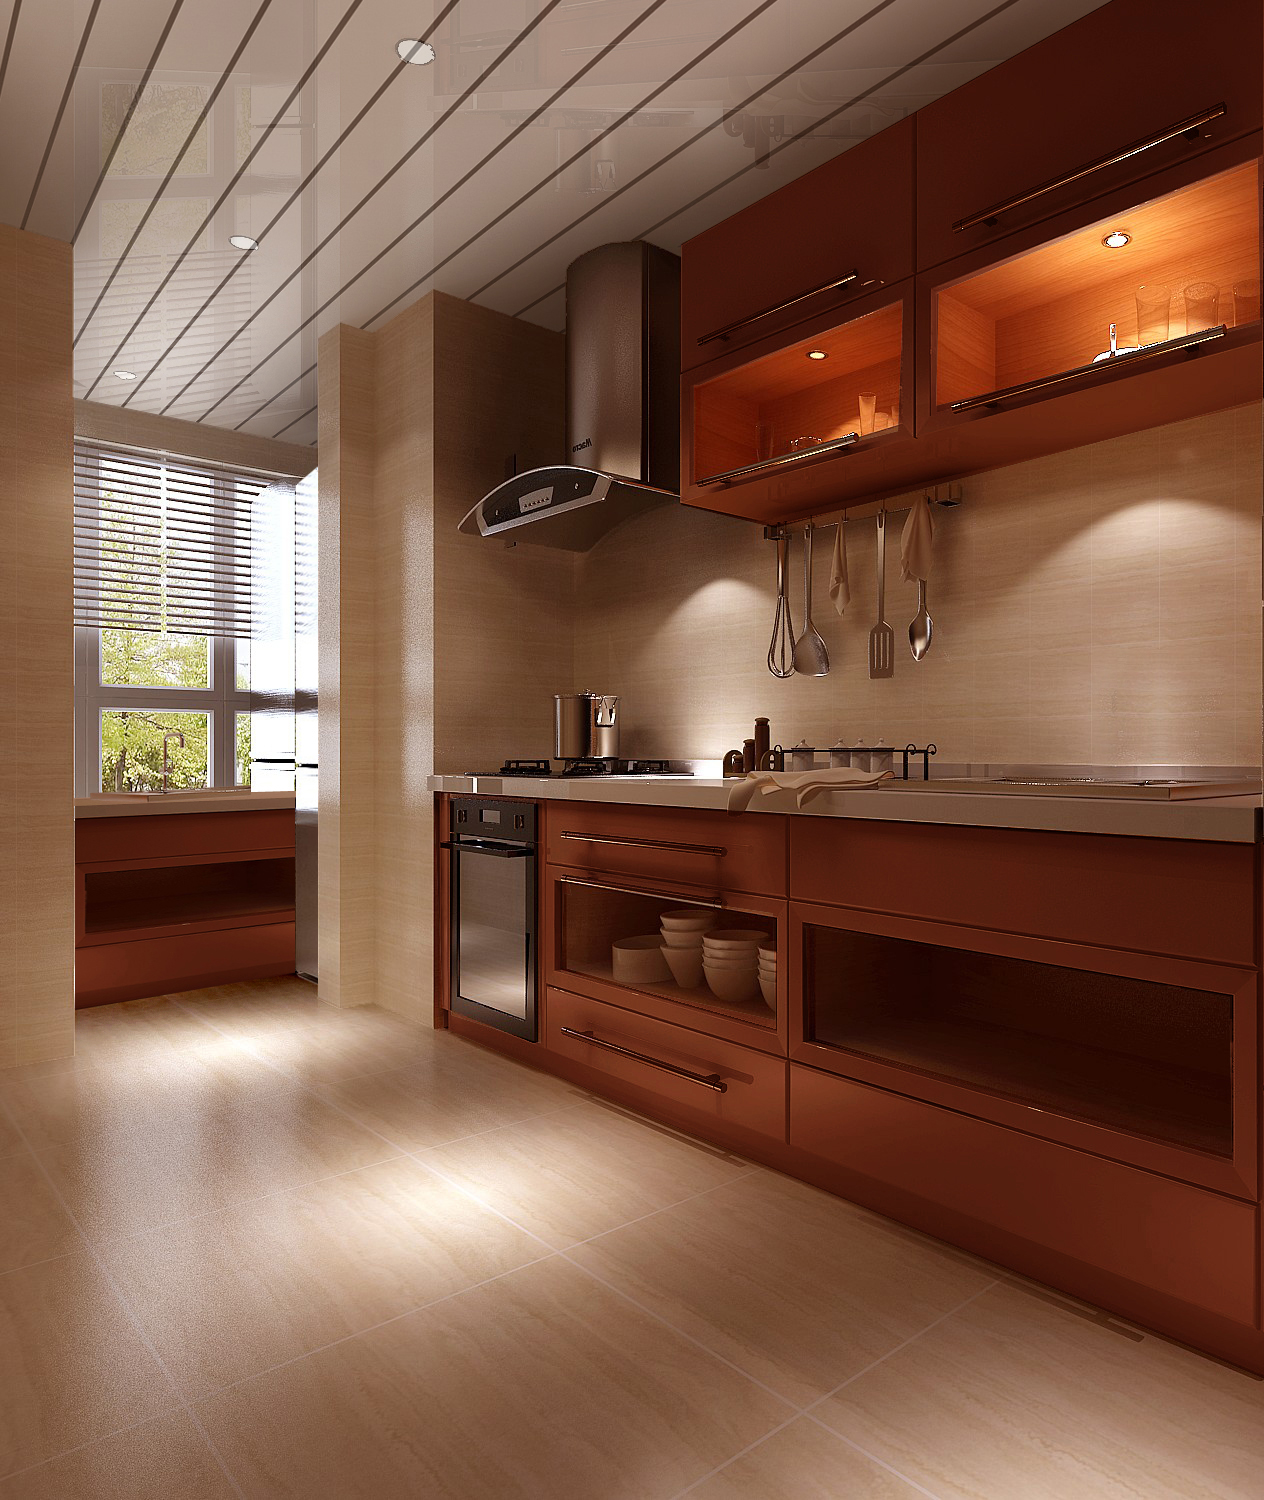 简约 三居 厨房图片来自北京装修设计o在欧陆经典的现代风格的分享